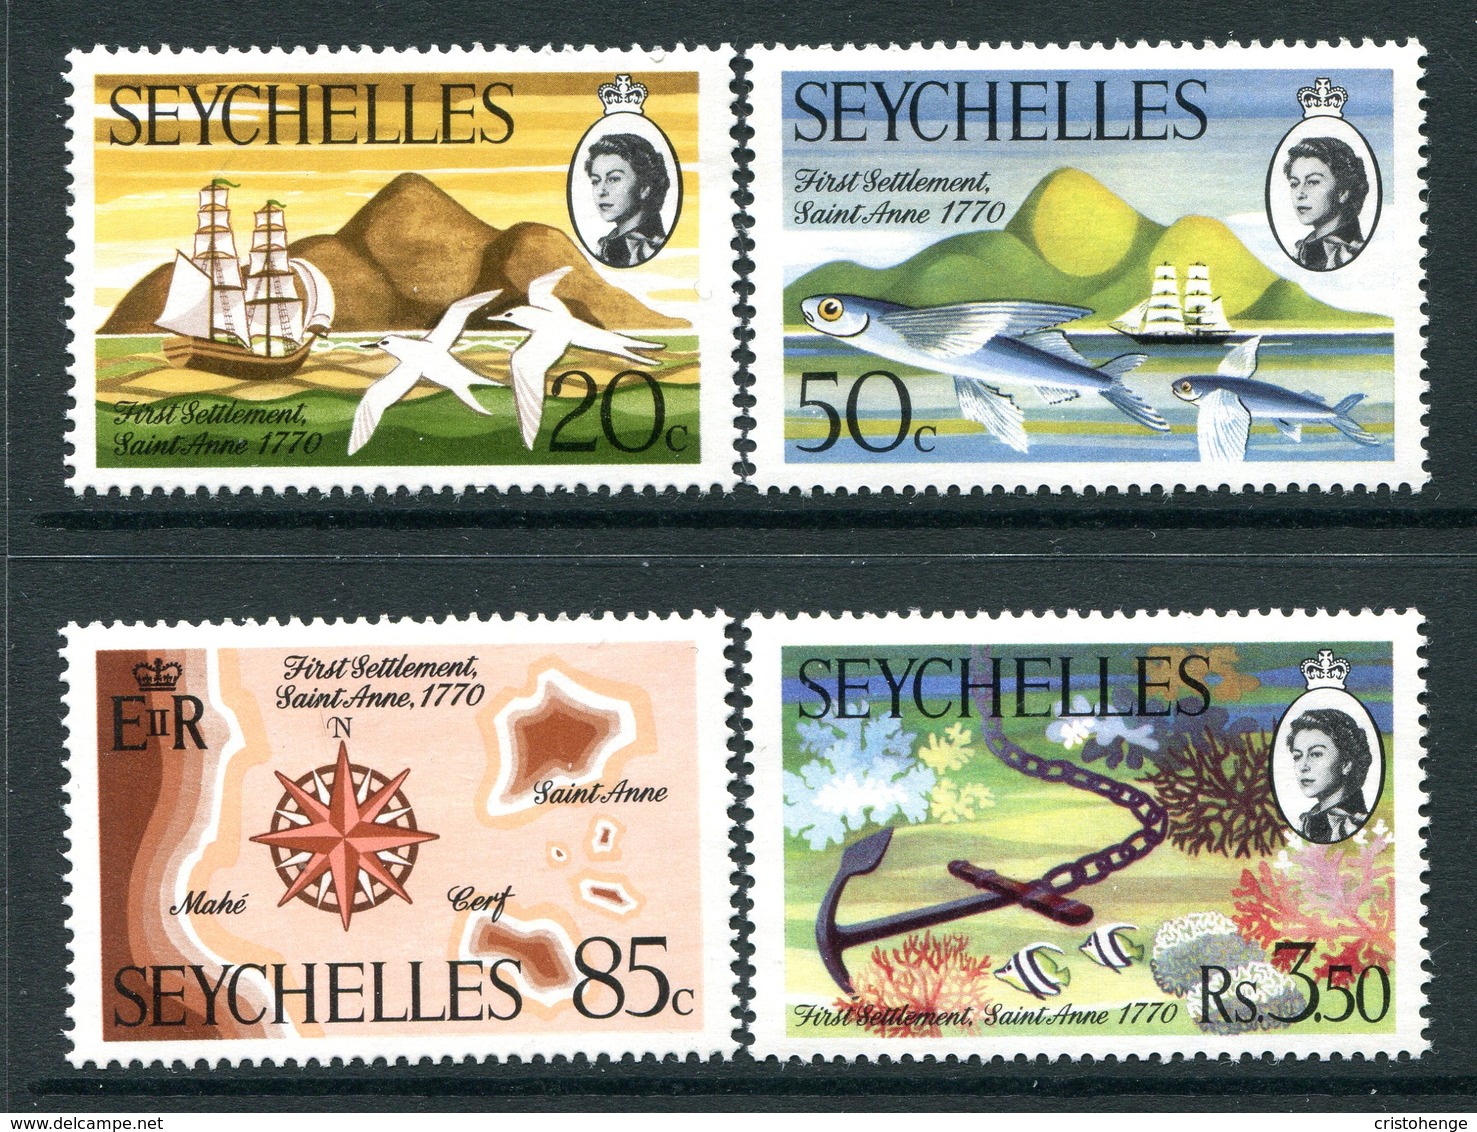 Seychelles 1970 Bicentenary Of First Settlement, St. Anne Island Set MNH (SG 280-283) - Seychelles (...-1976)